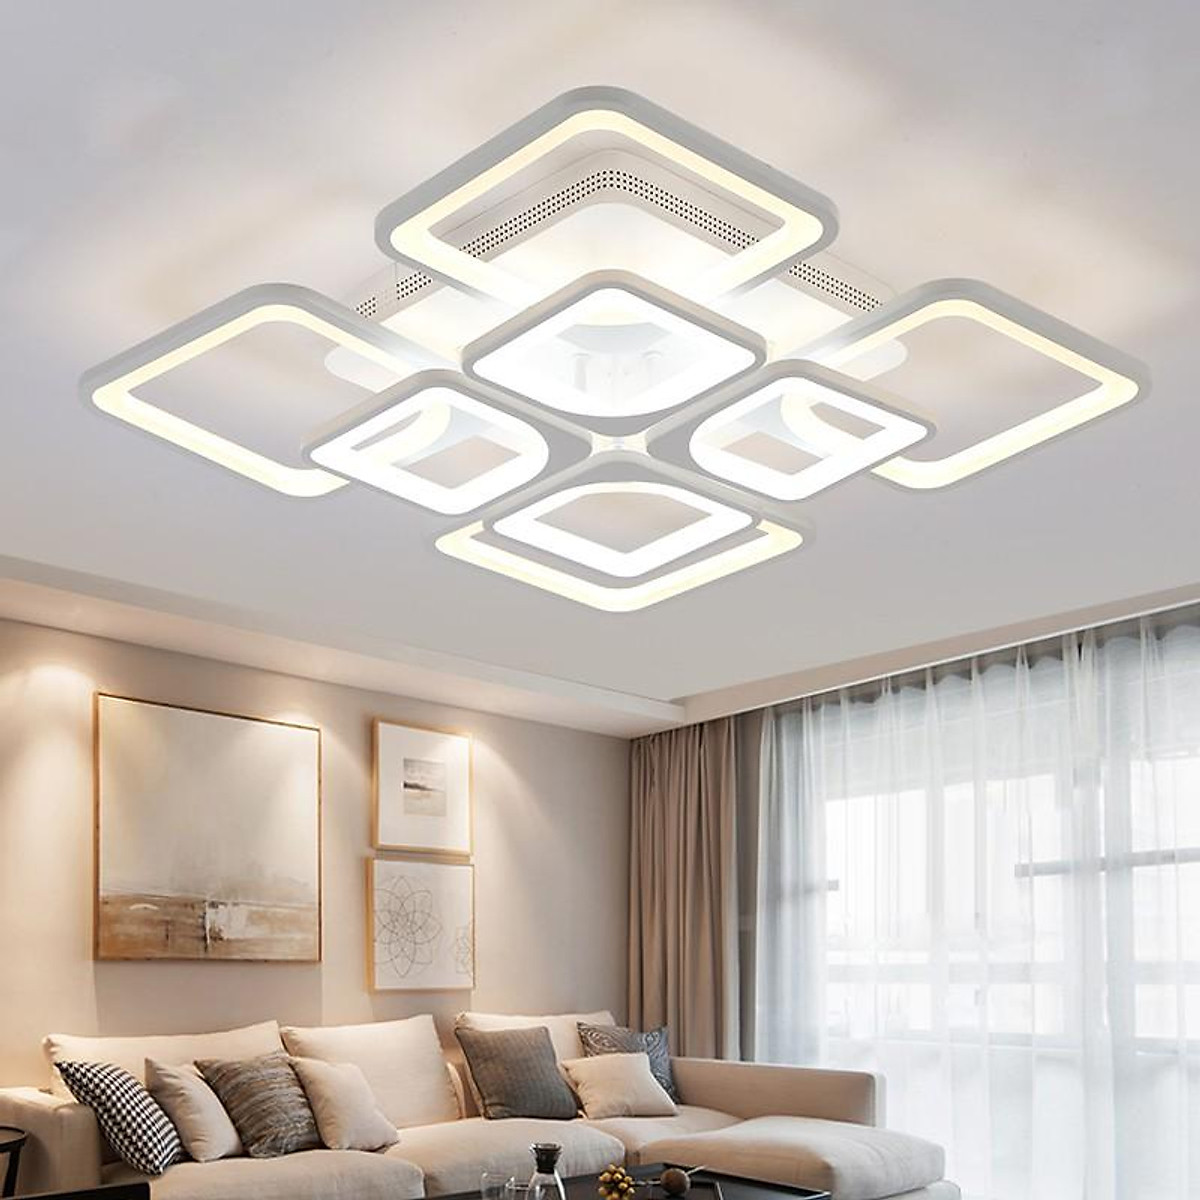 Nó không chỉ mang đến ánh sáng rực rỡ và ấm áp cho không gian phòng khách của bạn, mà còn tạo nên sự thân thiện và gần gũi với môi trường. Ngoài ra, với tính năng điều chỉnh độ sáng và màu sắc, đèn LED phòng khách hiện đại sẽ giúp bạn tạo ra một không gian sống tuyệt vời, đáp ứng toàn diện nhu cầu của gia đình bạn. Hãy để chúng tôi giúp bạn trang trí đèn LED phòng khách hiện đại và tận hưởng không gian sống tuyệt vời ở năm 2024.